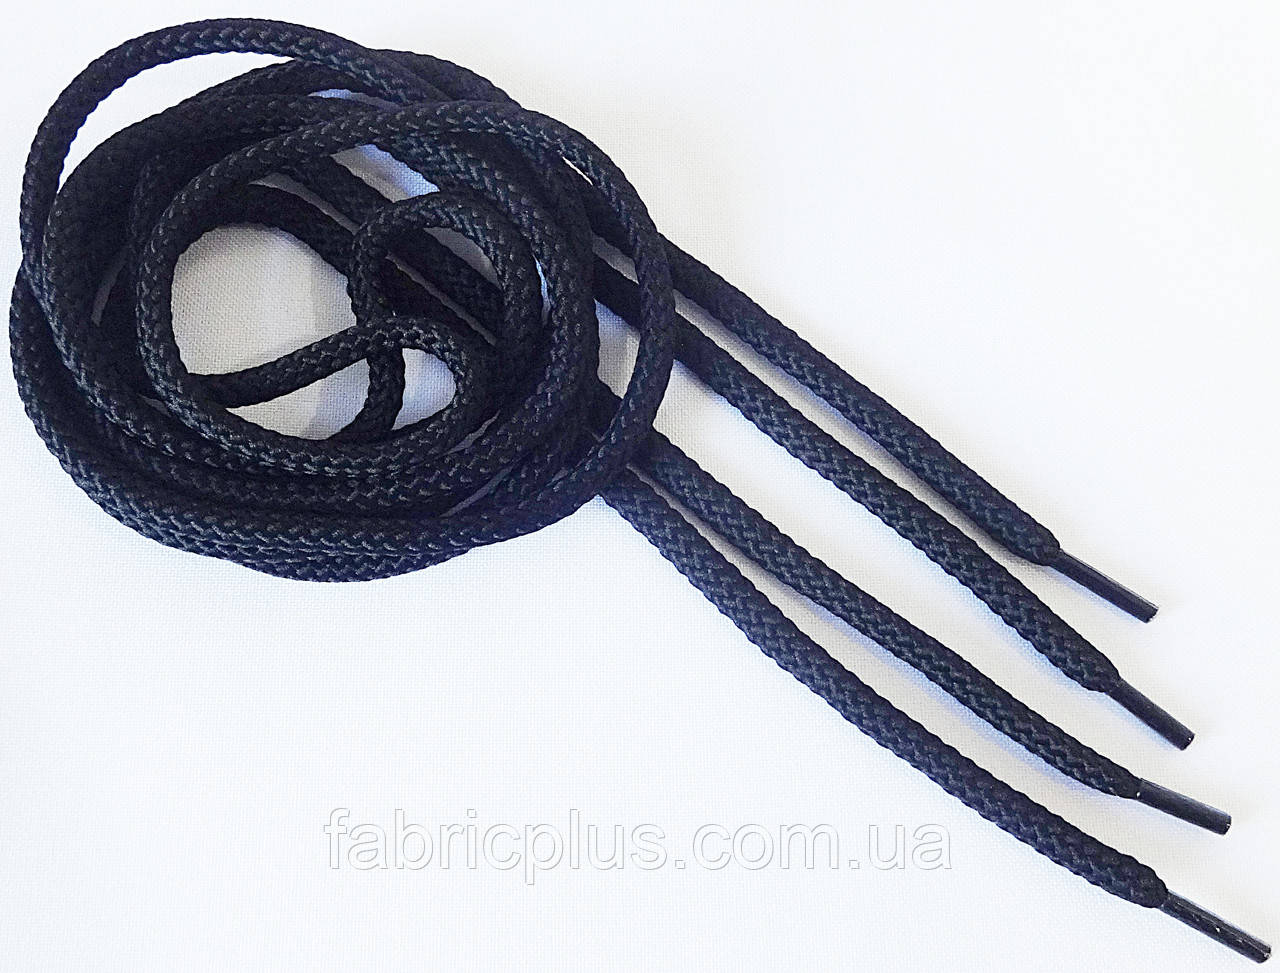 Шнурки круглые 2 м черные толстые 5 мм: продажа, цена в .